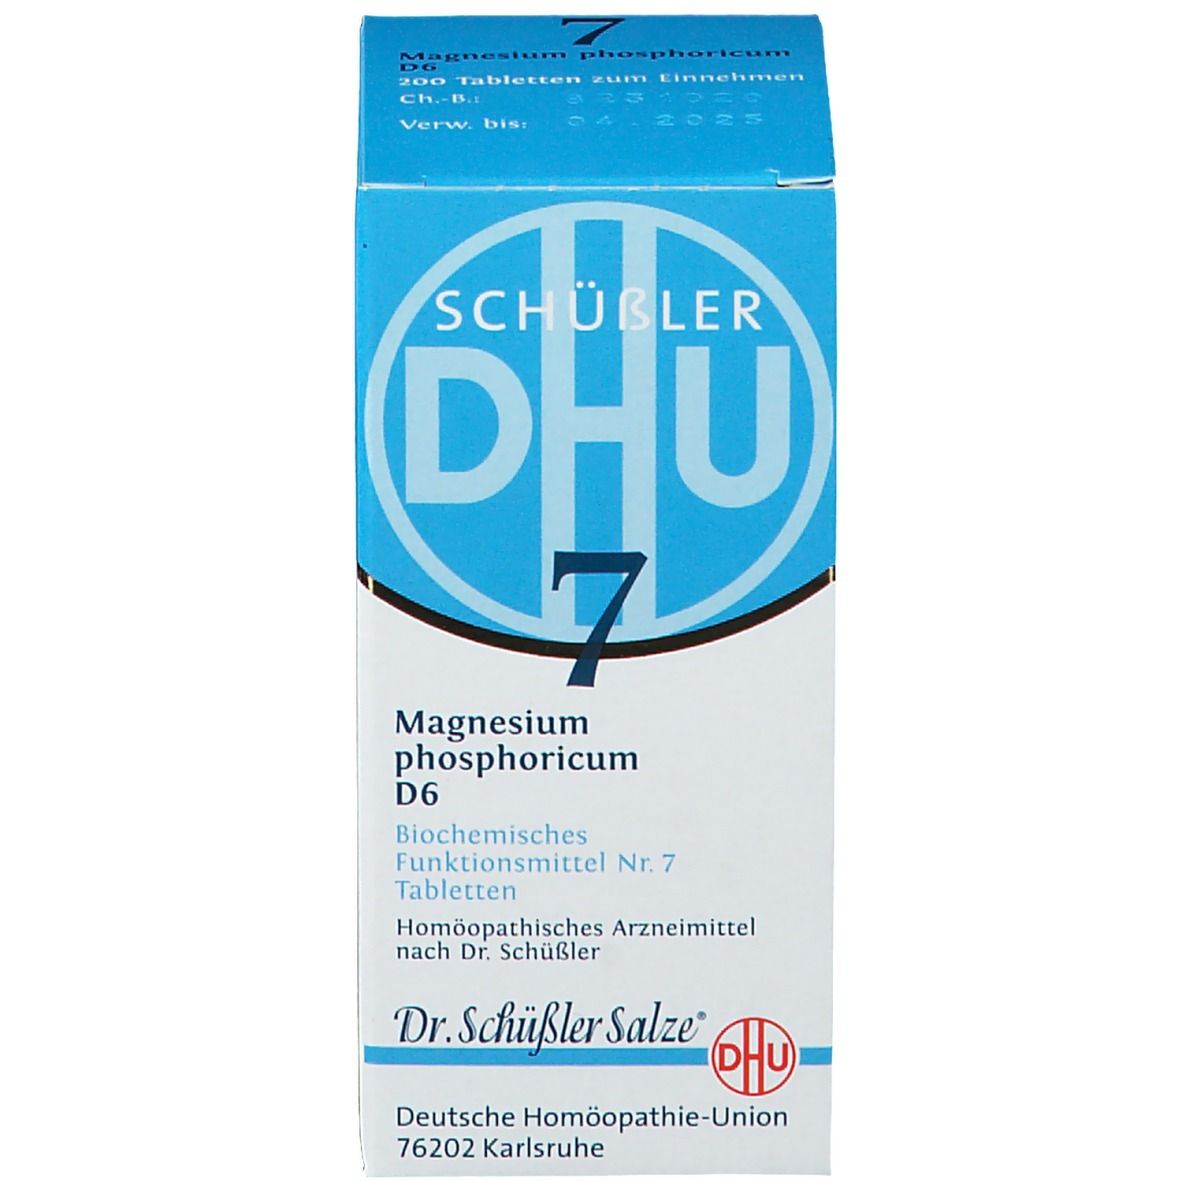 DHU Biochemie 7 Magnesium phosphoricum D6